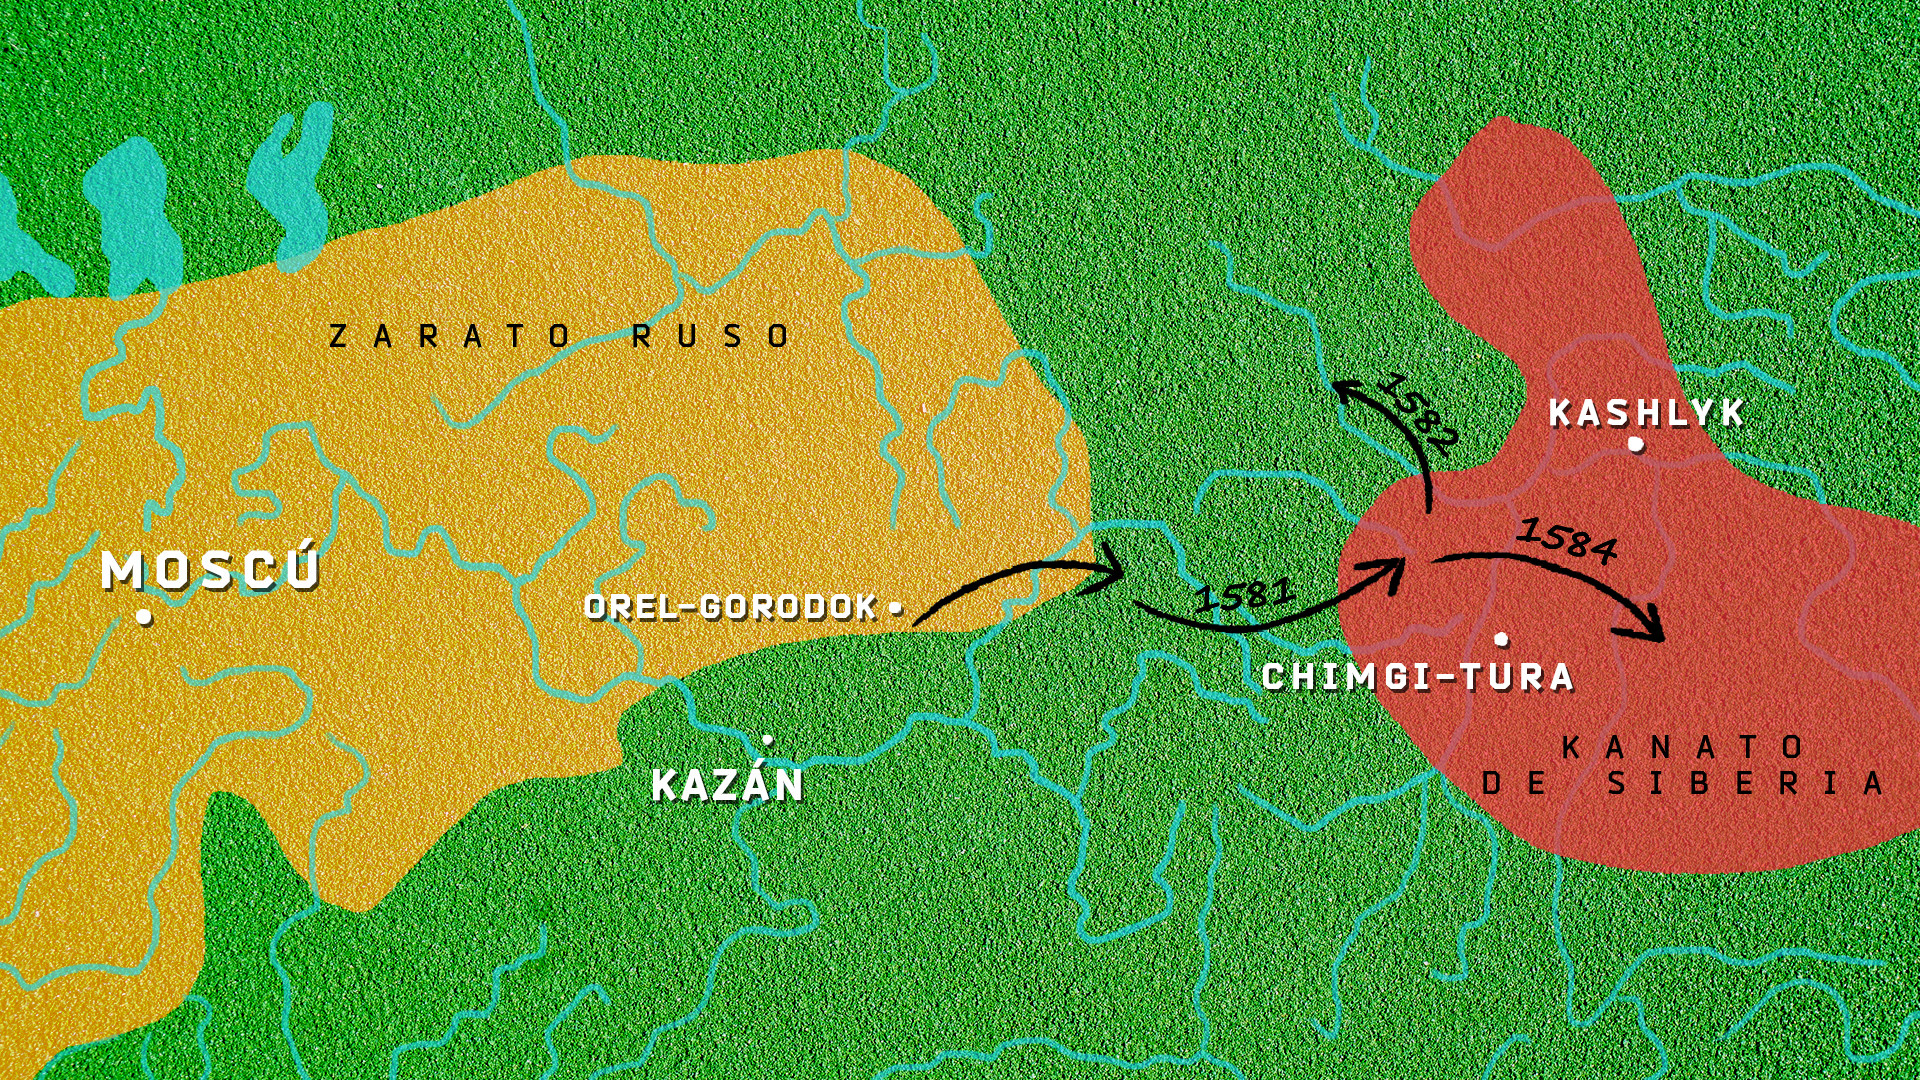 Mapa del Zarato ruso comparado con el Kanato de Siberia Las flechas negras indican la ruta aproximada del ejército de Yermak.